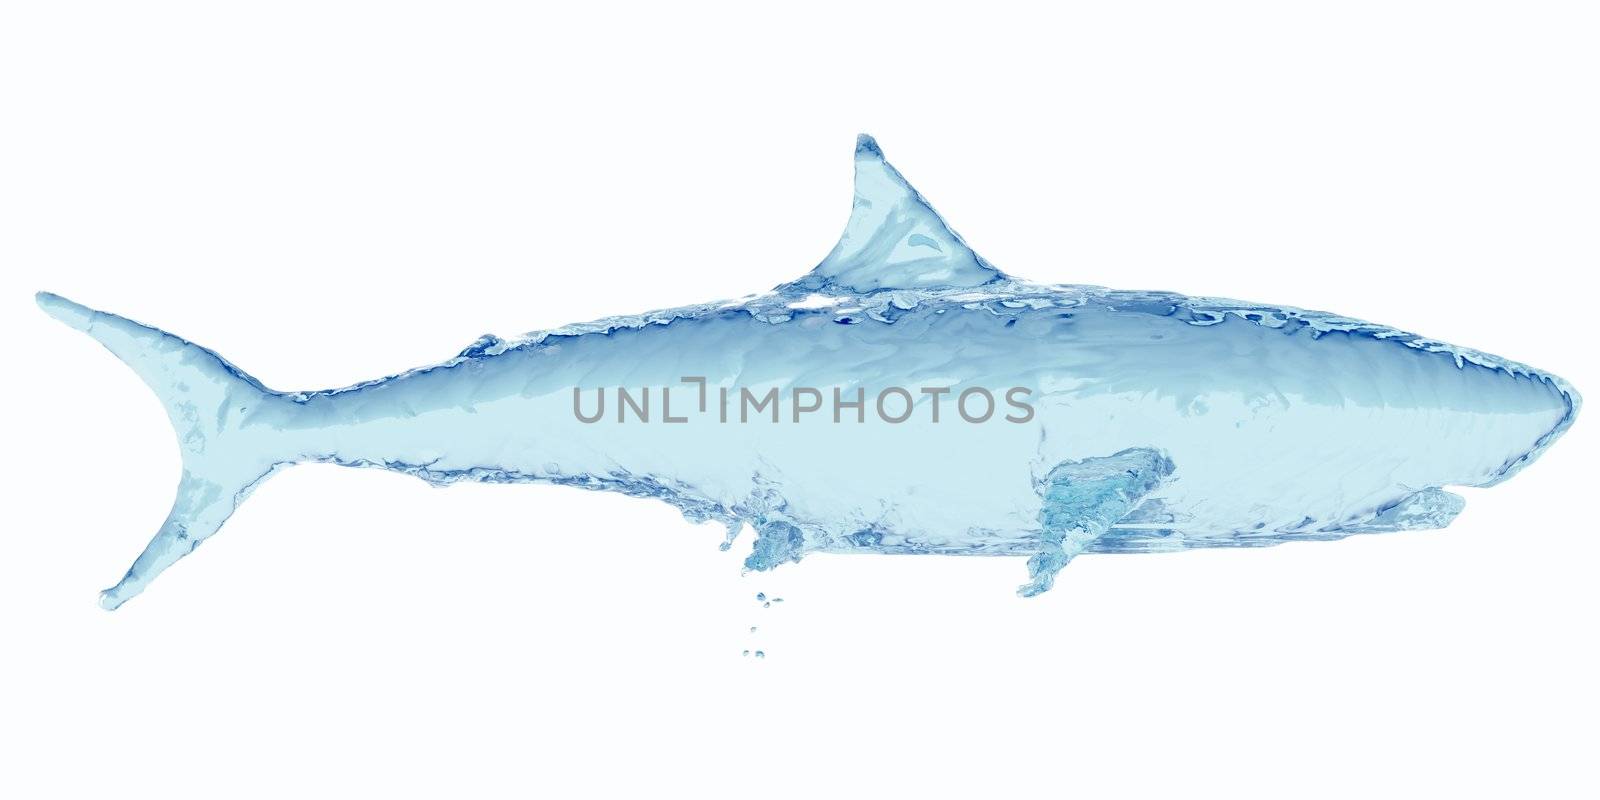 Water shark by cherezoff